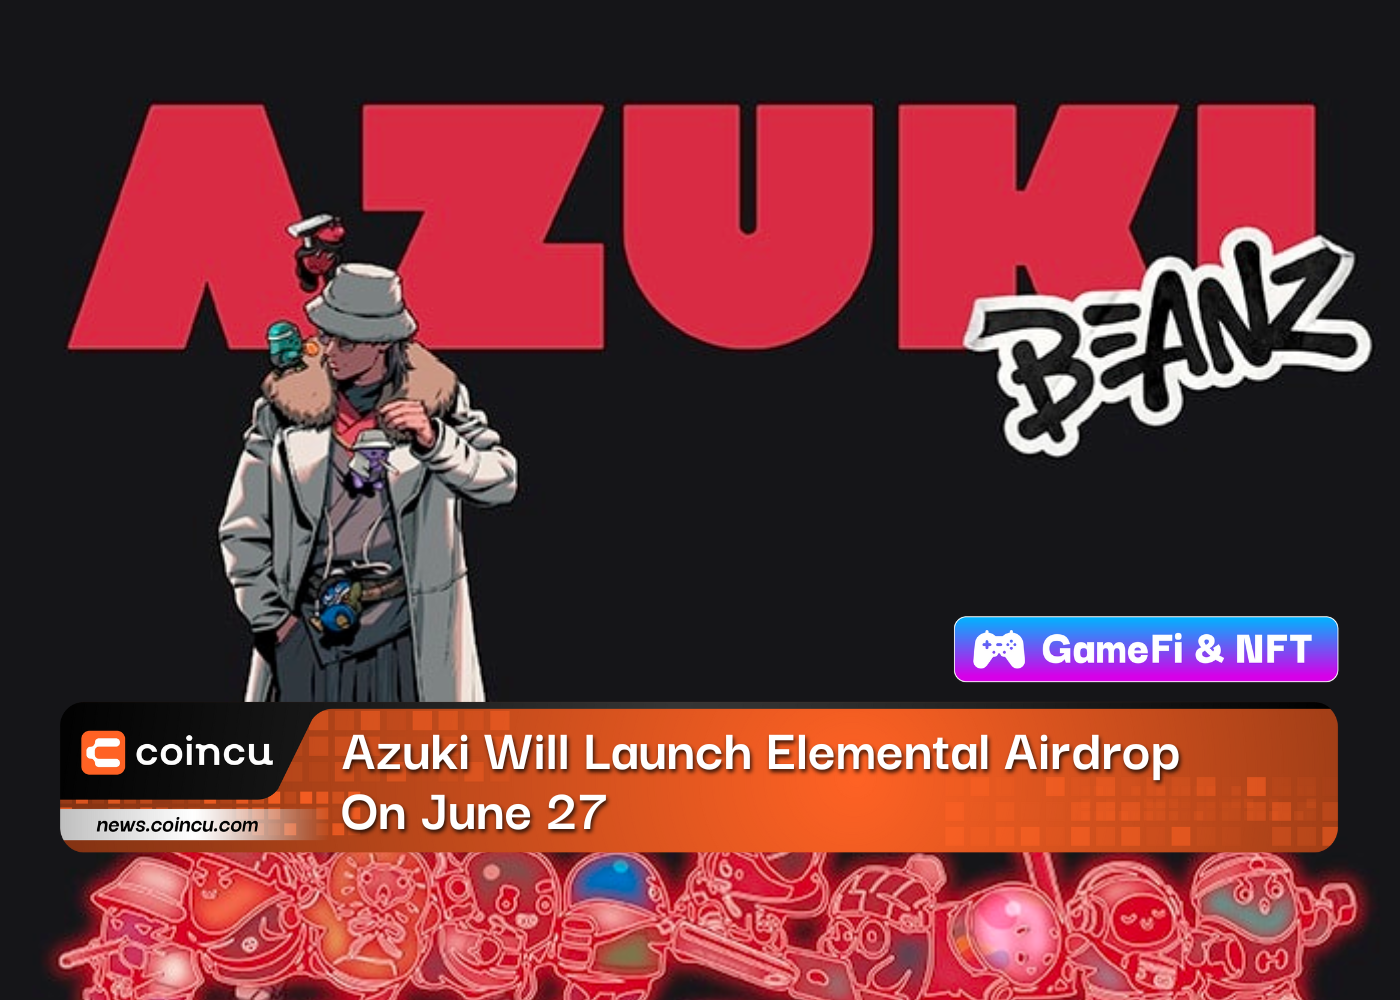 Azuki запустит раздачу Elemental Airdrop 27 июня